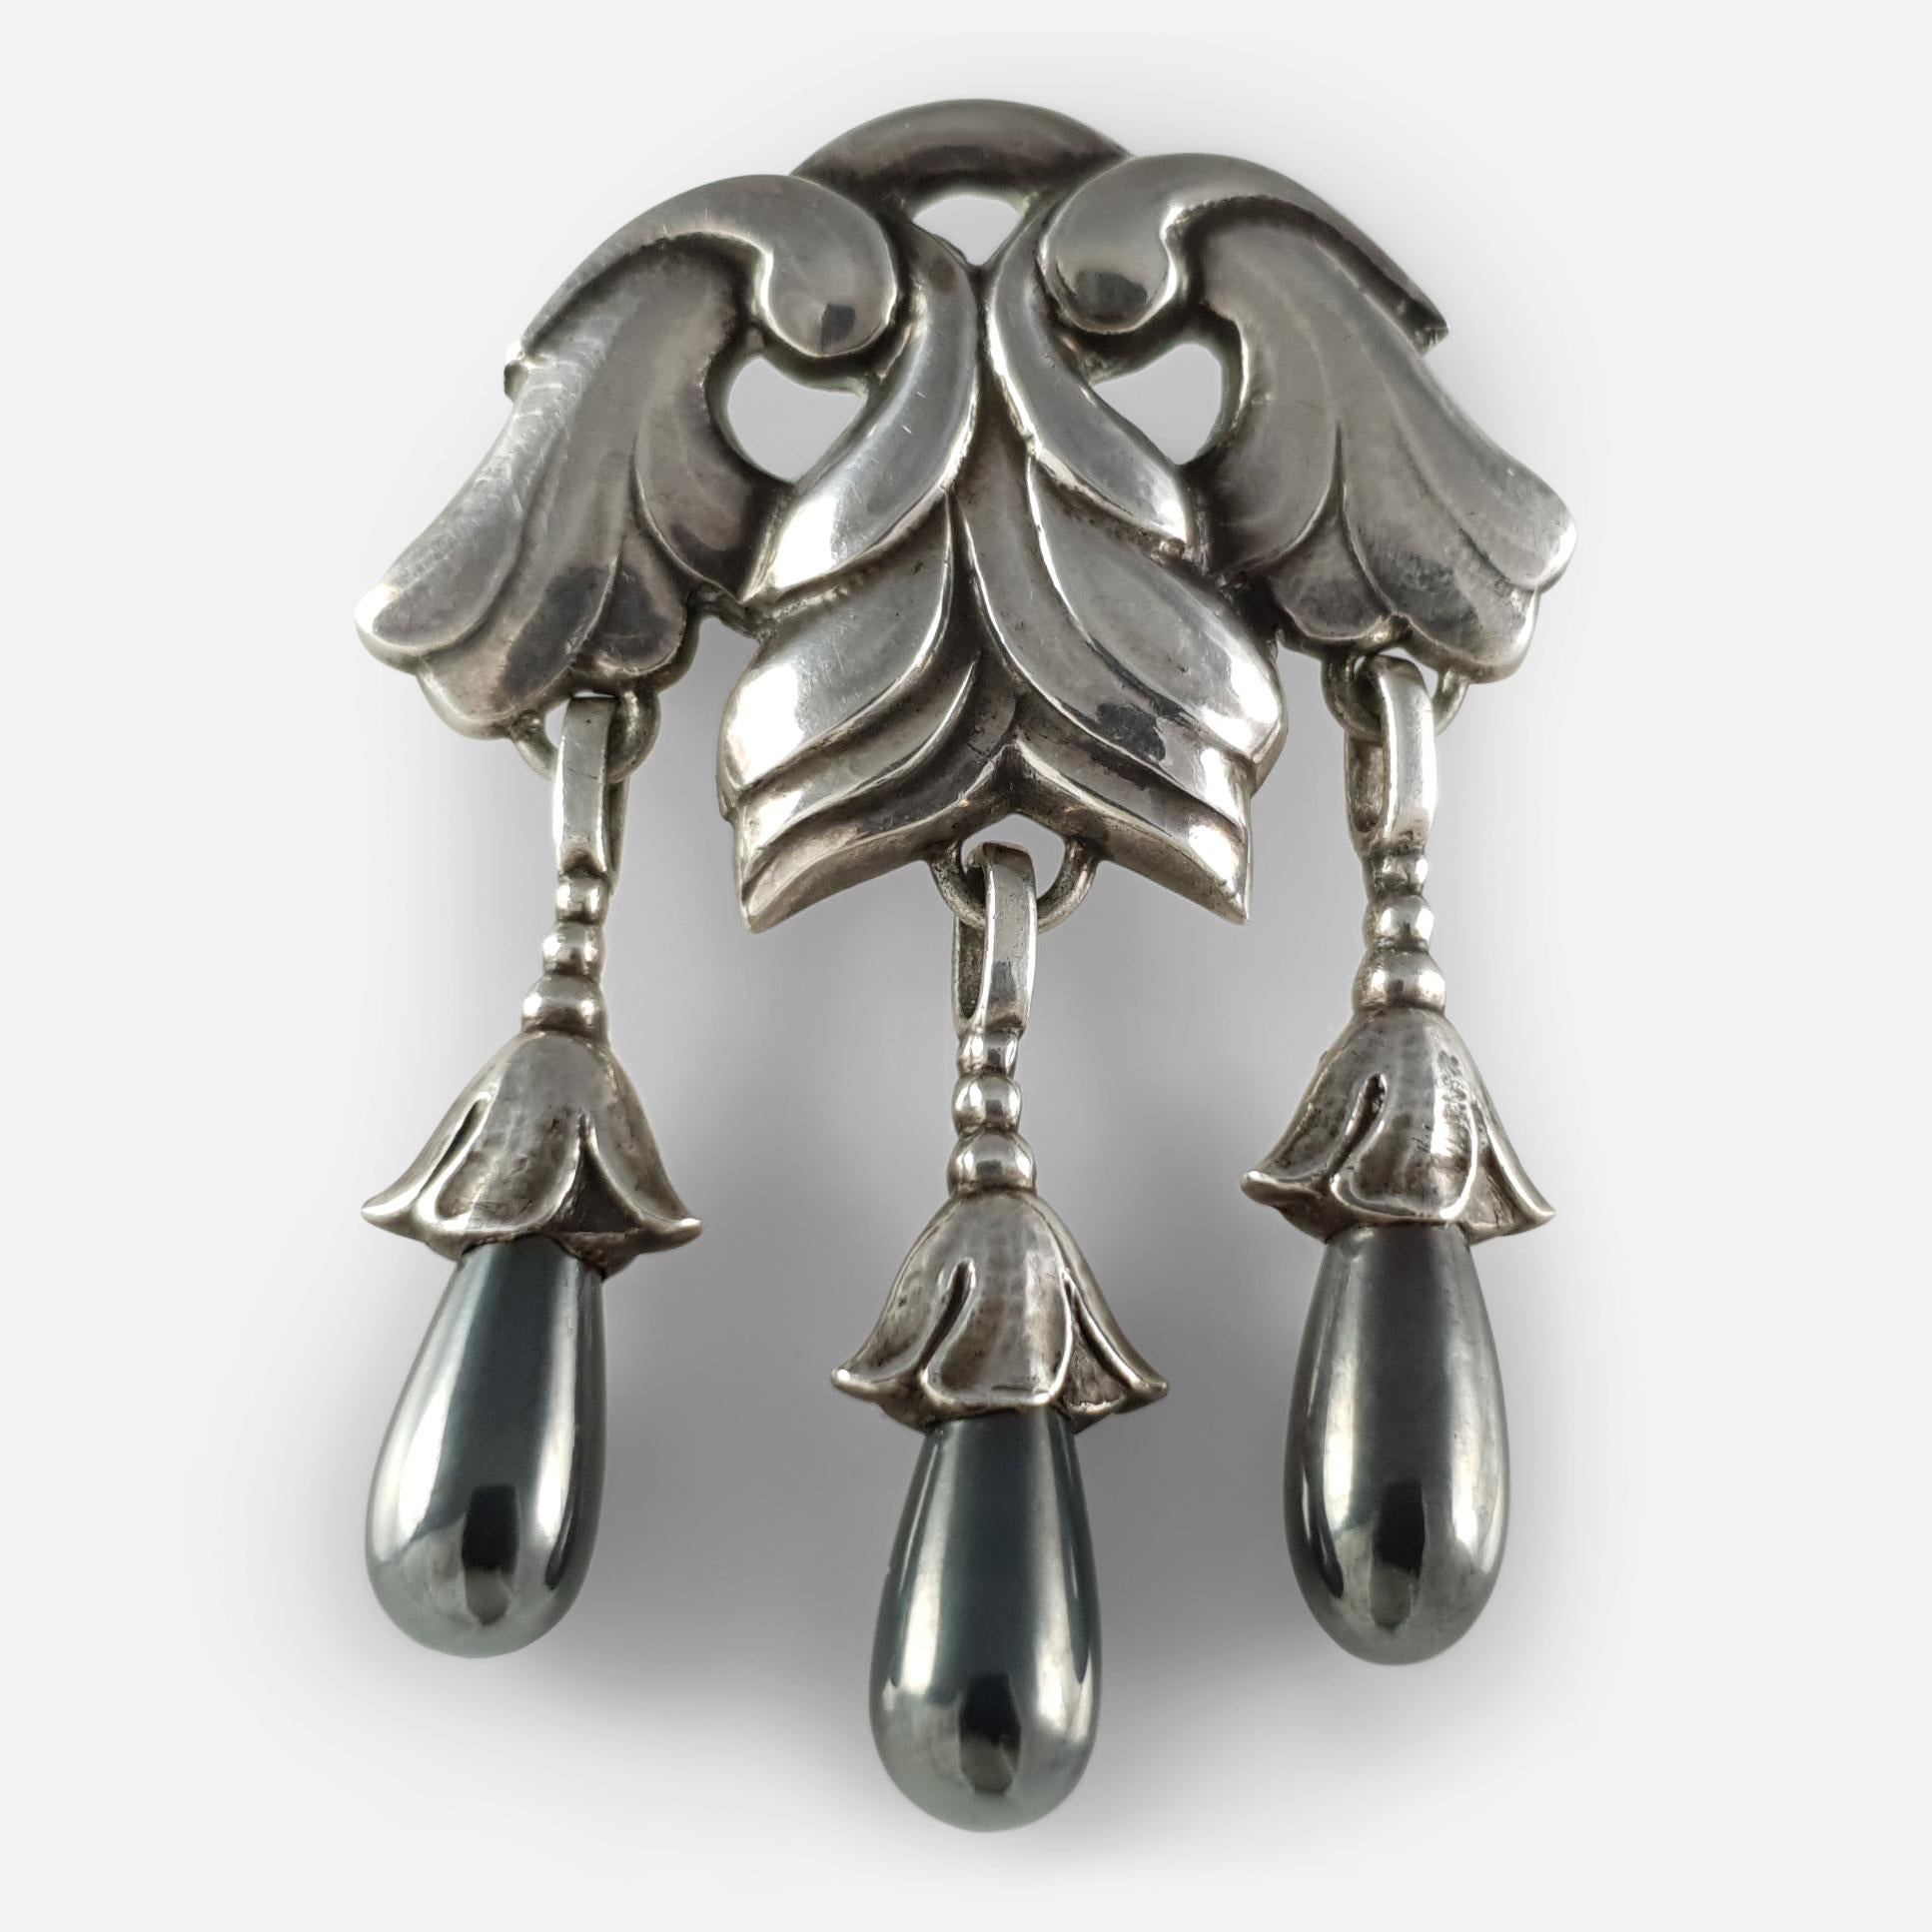 Une broche Georg Jensen en argent et hématite #132, vers 1915-1930.  La partie supérieure argentée et feuilletée suspend trois gouttes d'hématite polie. 

La broche est estampillée de la marque du fabricant GI à l'intérieur d'un cercle de perles